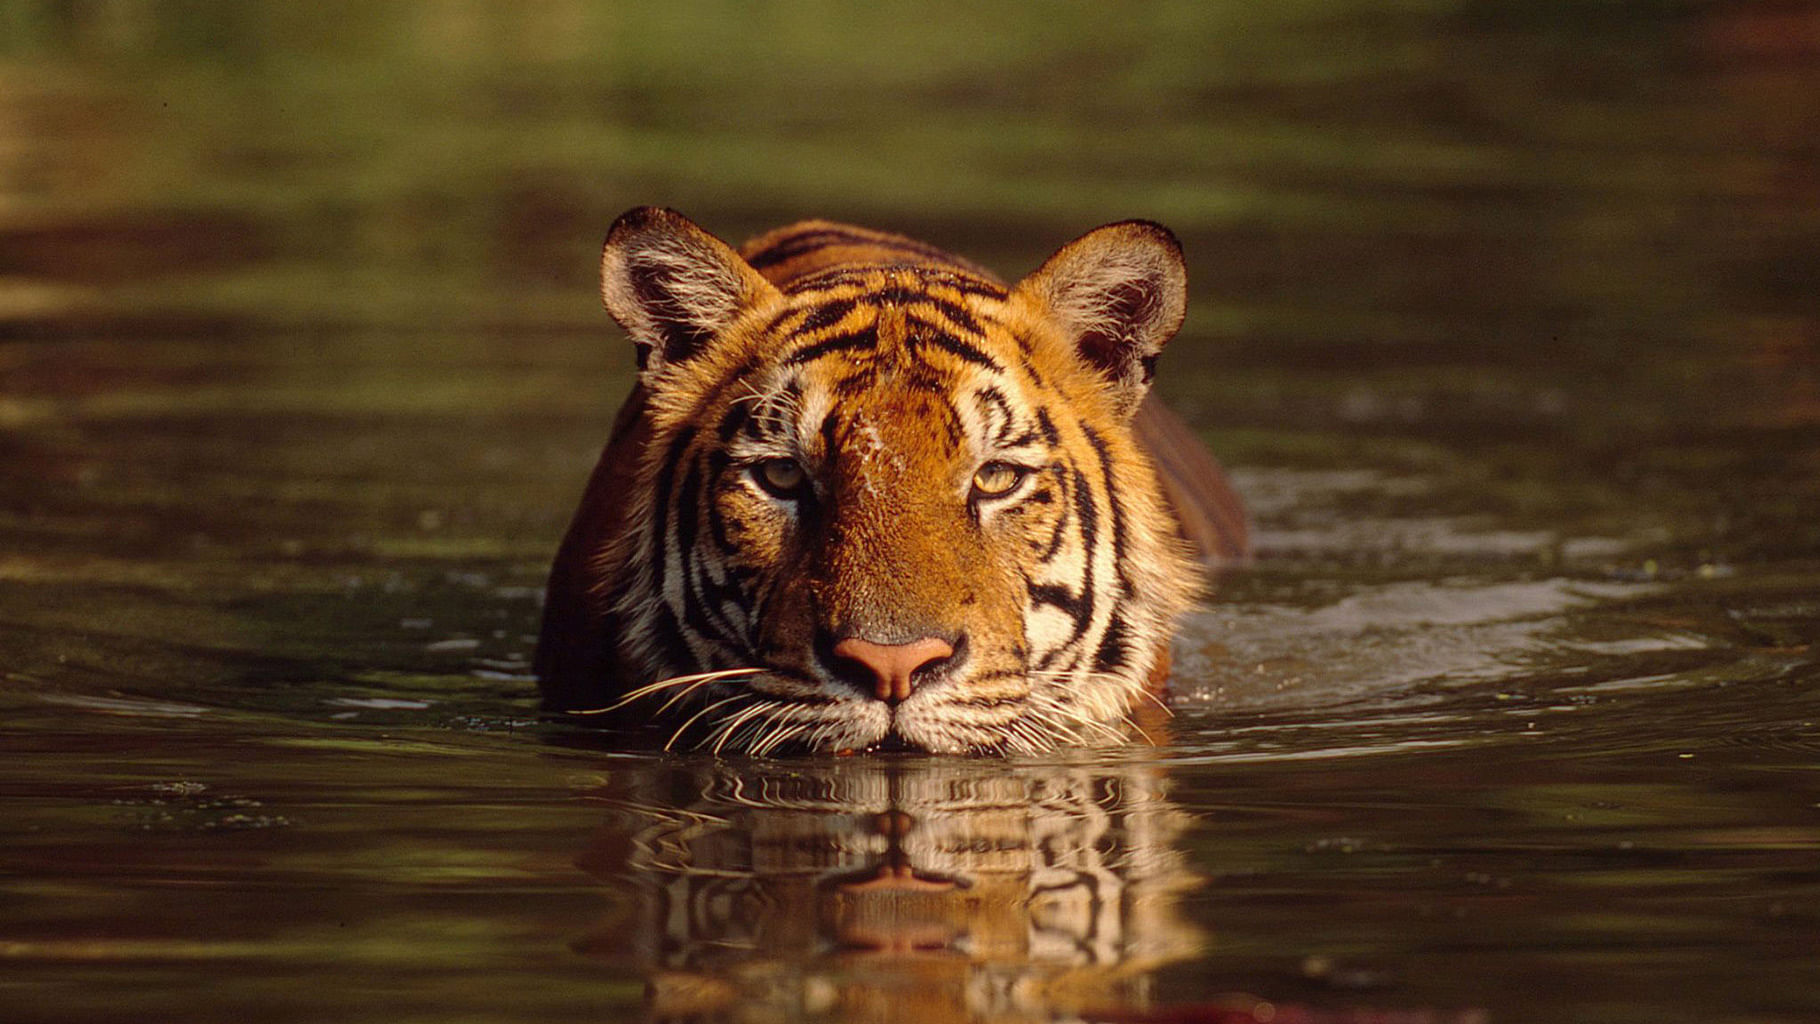 Bengal tiger, Diet, Habitat, & Facts